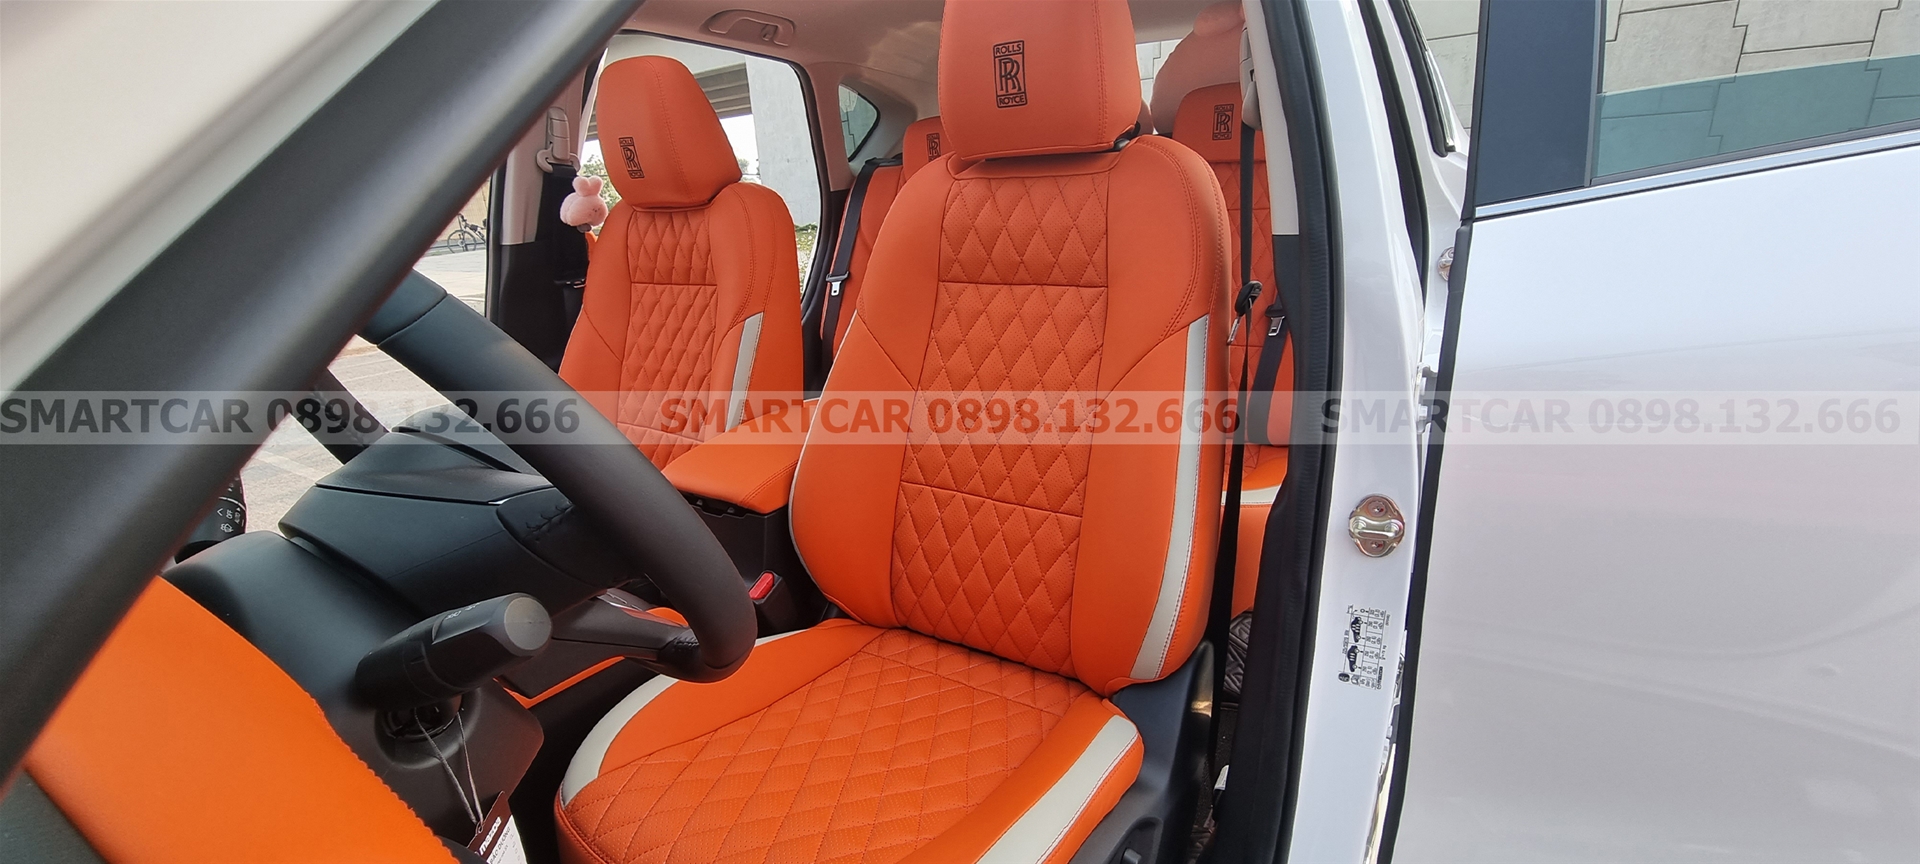 Bọc ghế da Mazda CX5 màu cam Hermes - Hình 2